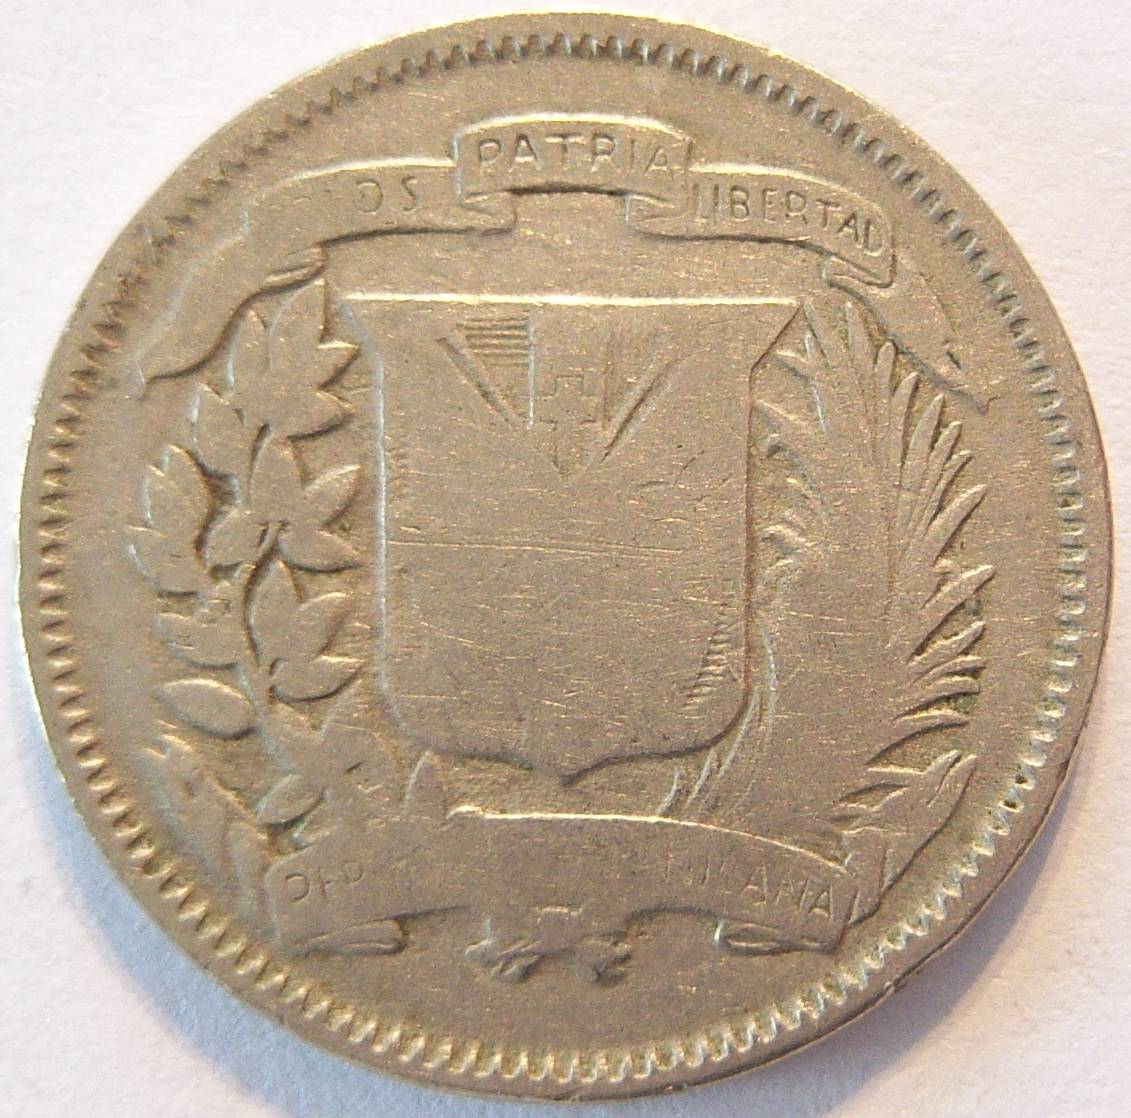  Dominikanische Republik 5 Centavos 1937   